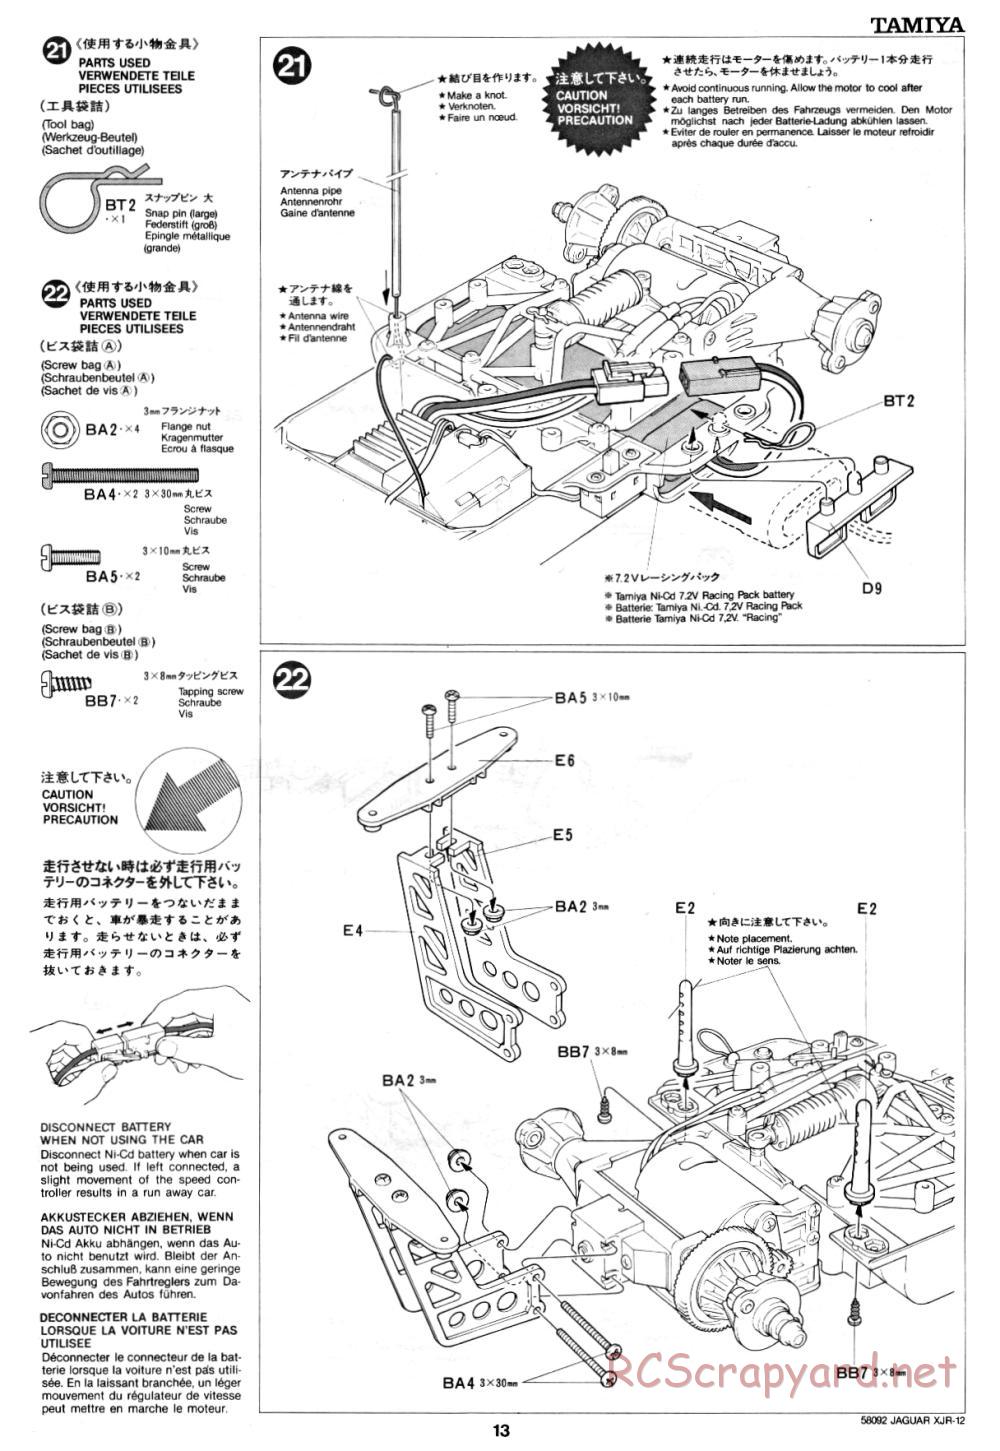 Tamiya - Jaguar XJR-12 - 58092 - Manual - Page 13